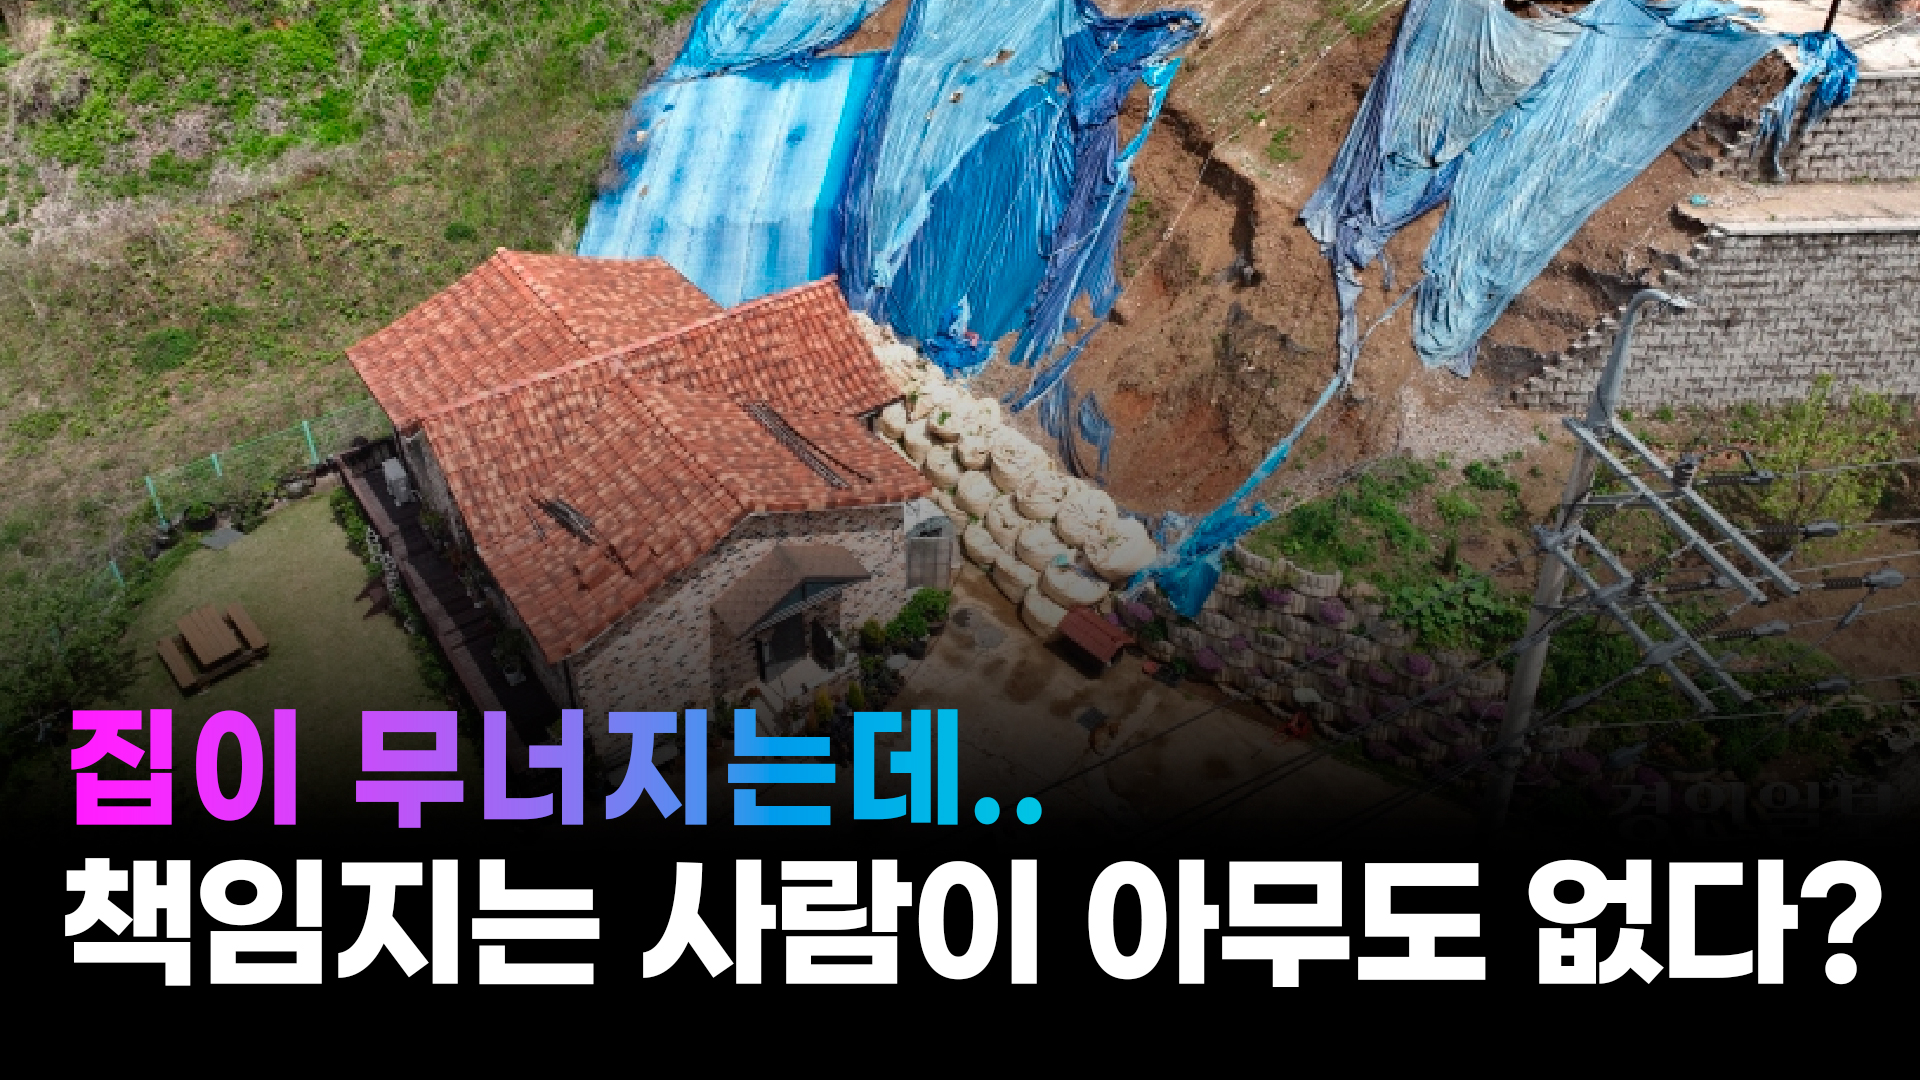 [영상+] 무너져 주택 덮친 옹벽 `2년째 방치`, 처음부터 부실 정황… ``화성시 방관``